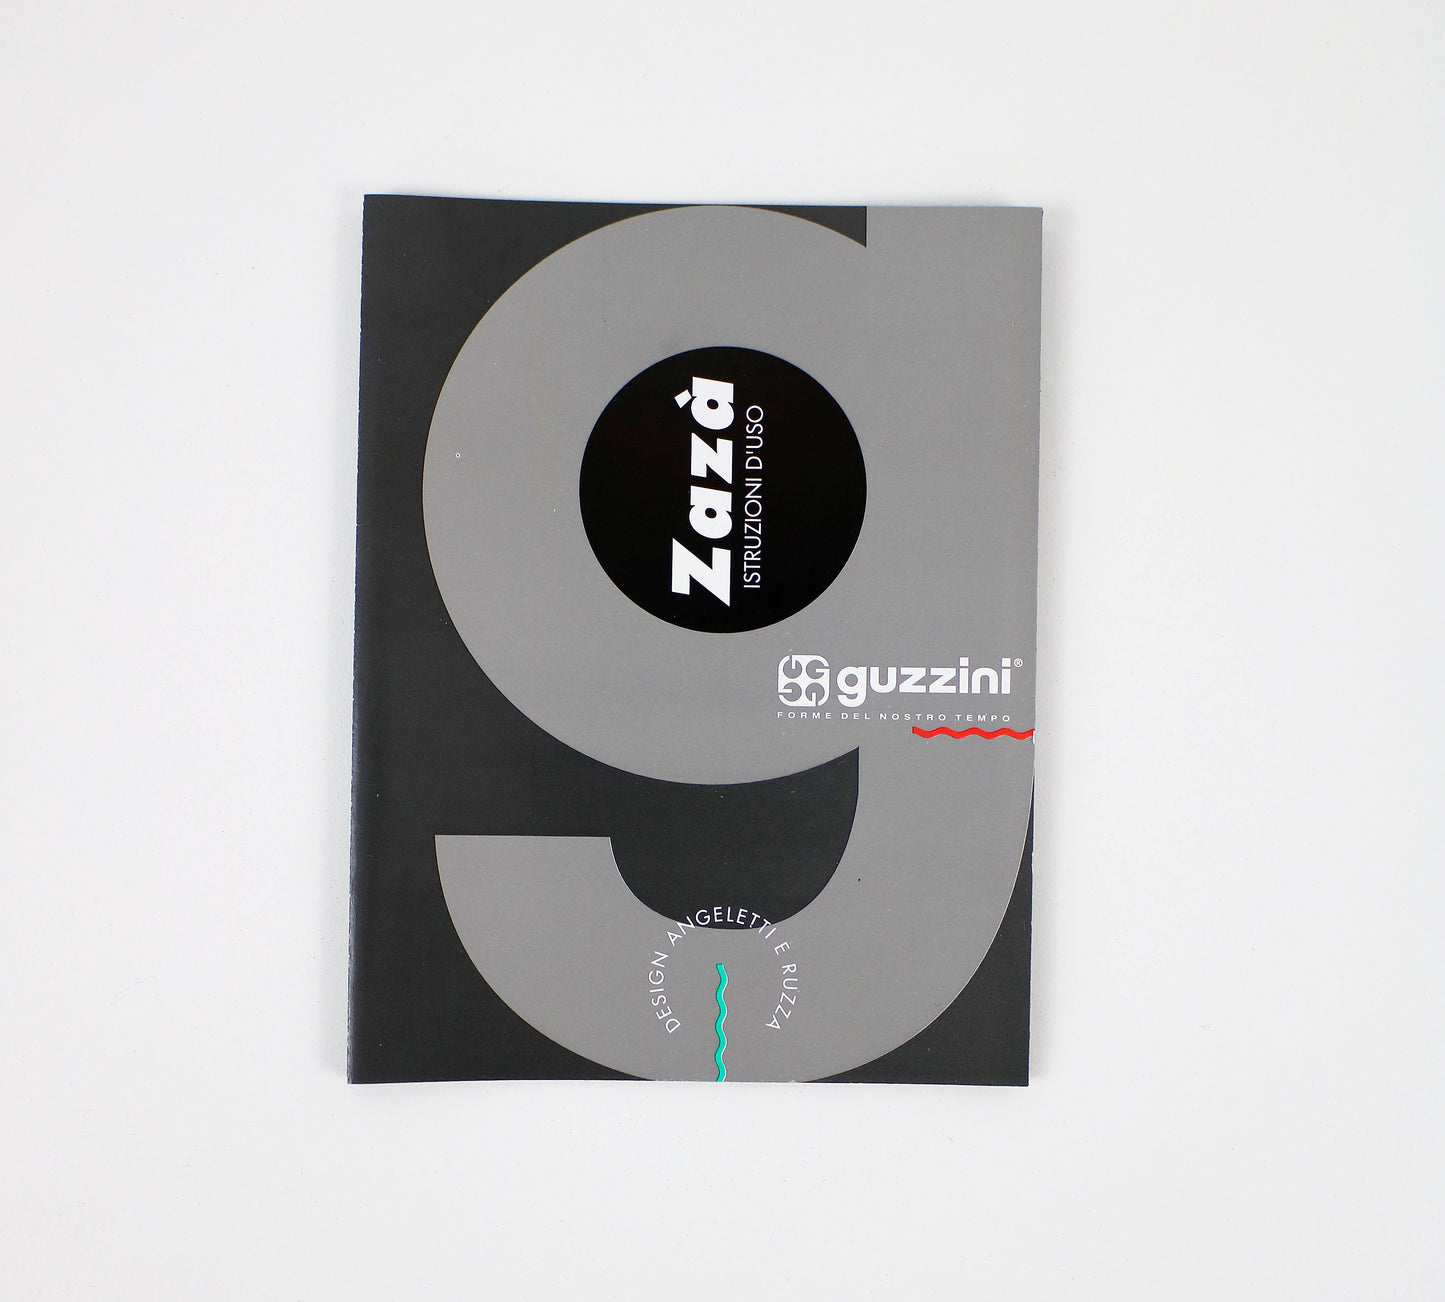 Zaza coffee maker by Angletti and Ruzza for Fratelli Guzzini - 1990s - 6 cup espresso aluminium